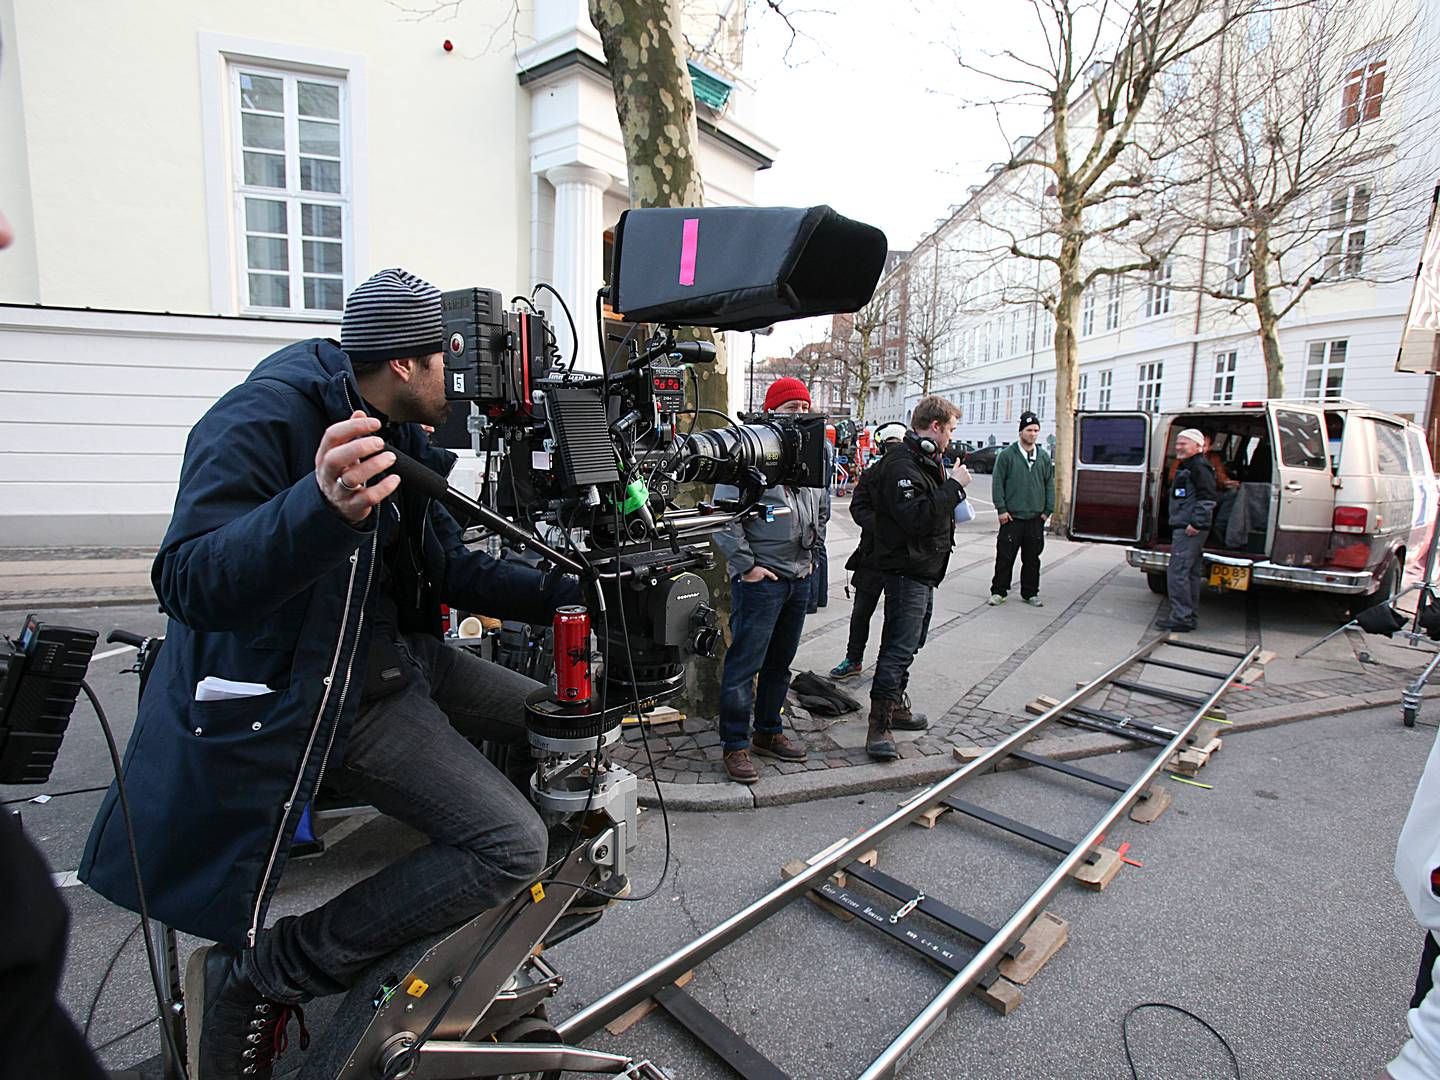 Den europæiske filmindustri er i høj grad afhængig af rabatter til produktion, viser ny rapport. | Foto: Jan Unger